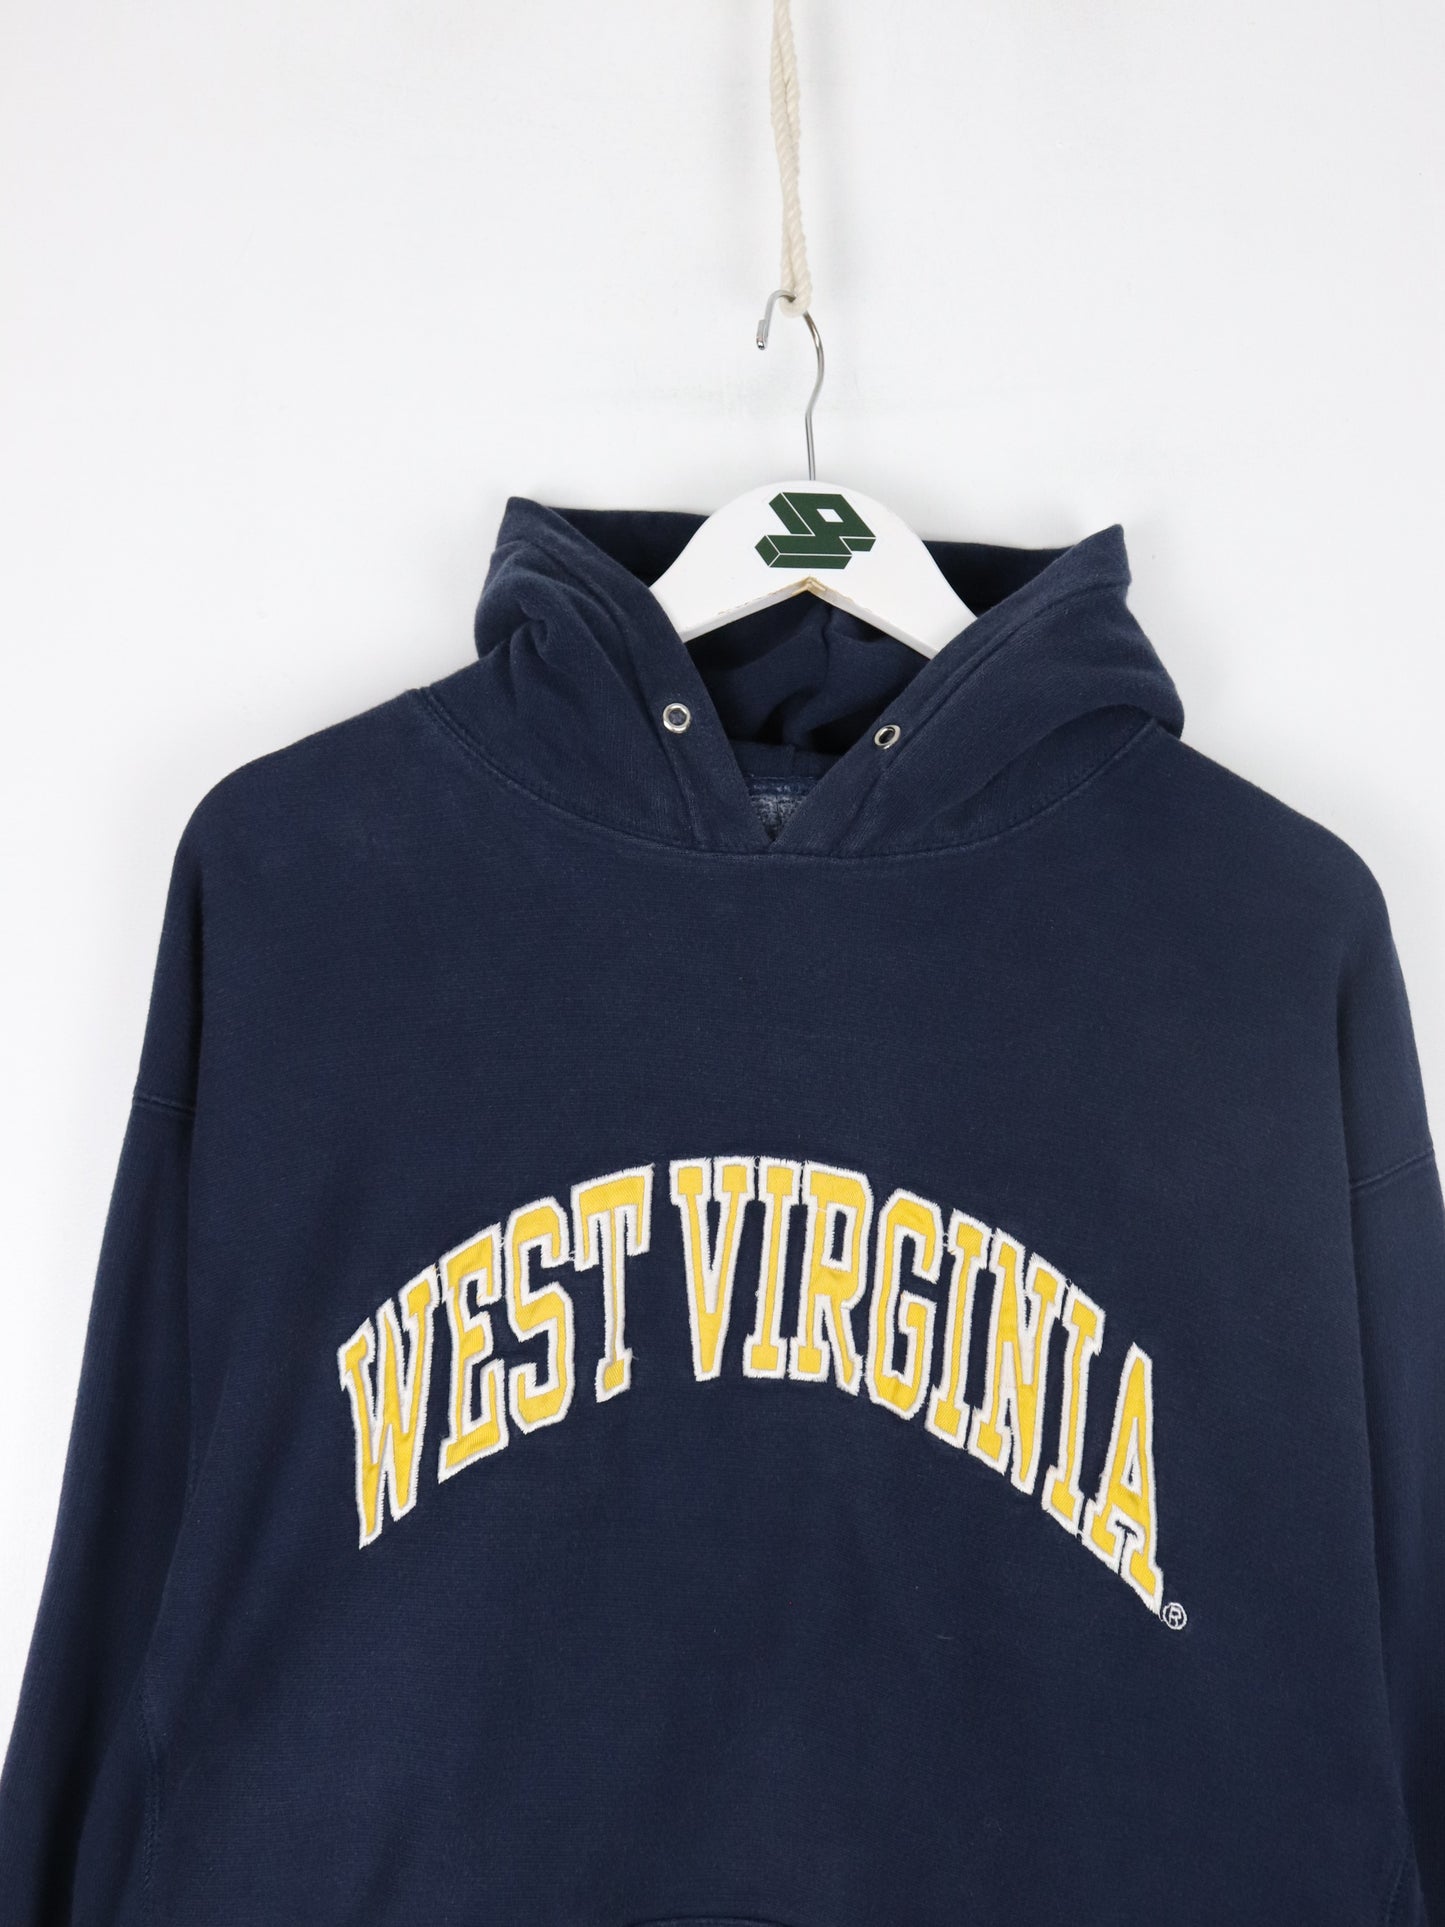 VIntage West Virginia University Sweatshirt Mens 2XL Blue College Hoodie